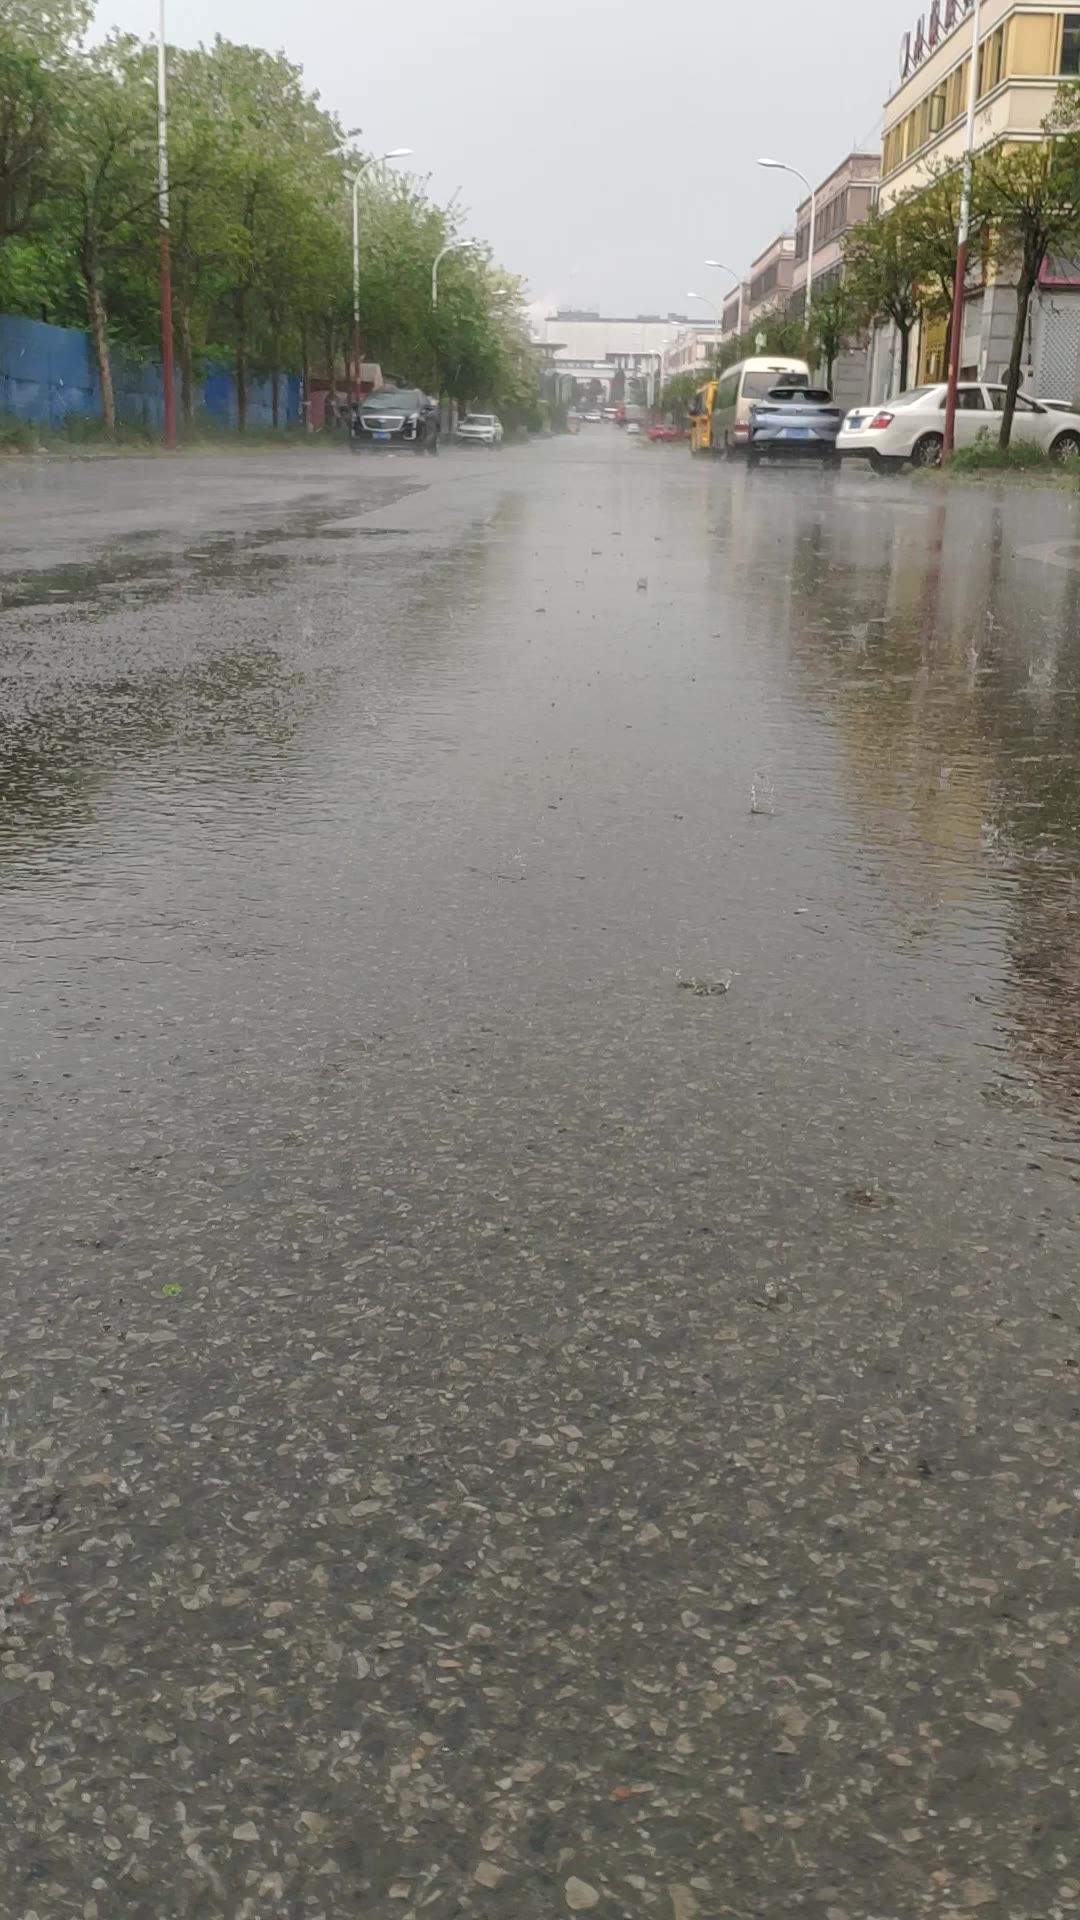 下雨的街道 下雨道路 下雨路面